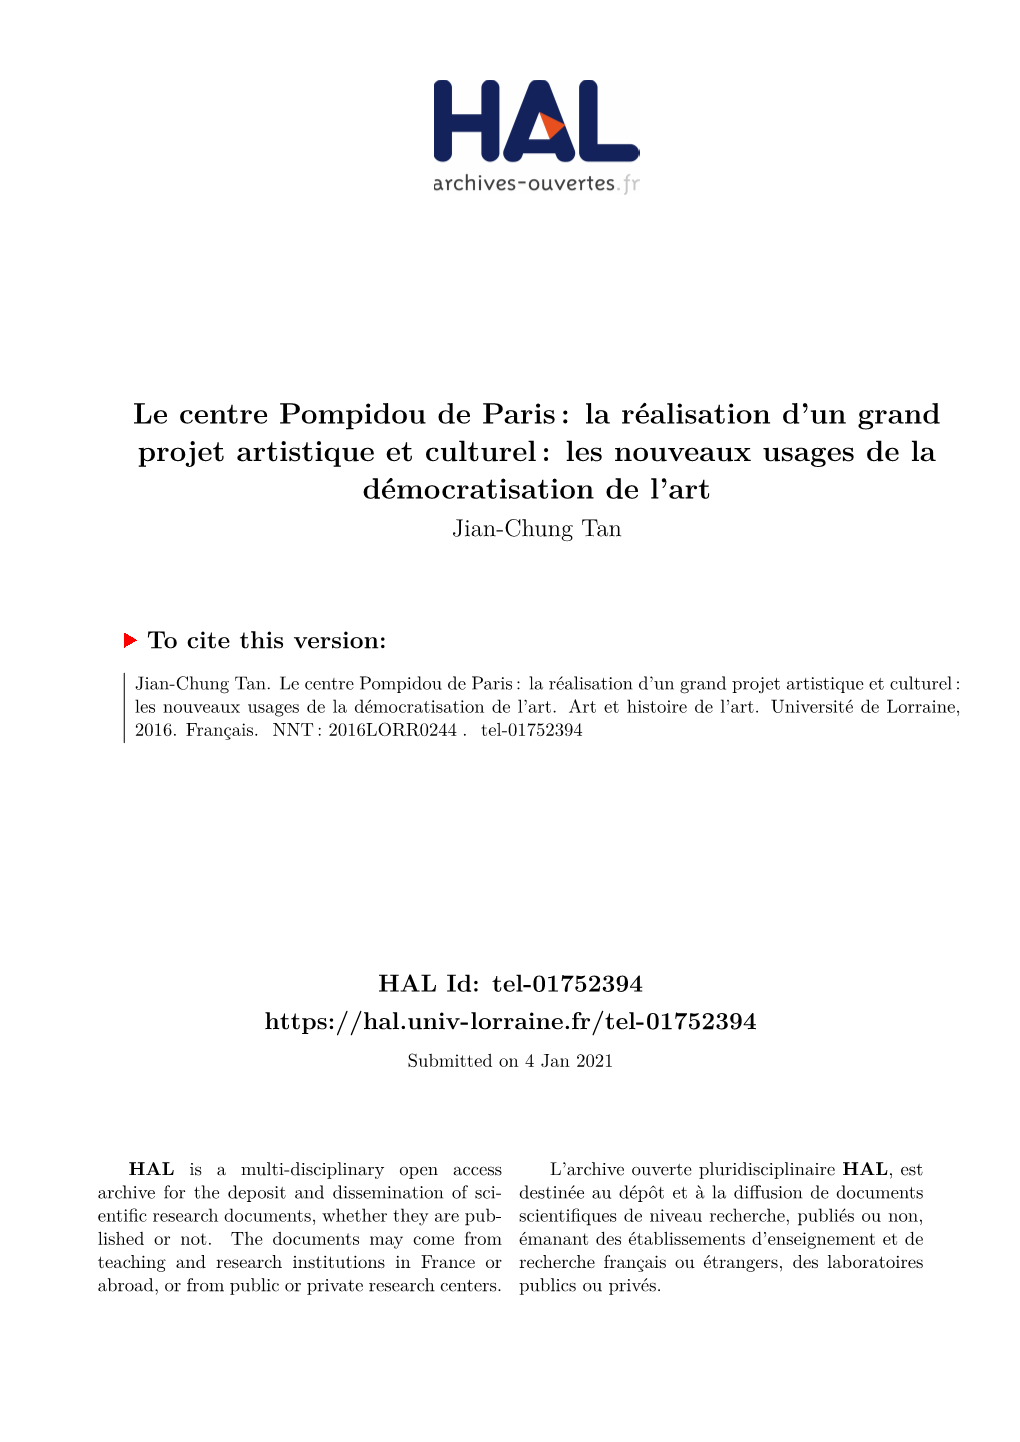 Le Centre Pompidou De Paris : La Réalisation D’Un Grand Projet Artistique Et Culturel : Les Nouveaux Usages De La Démocratisation De L’Art Jian-Chung Tan